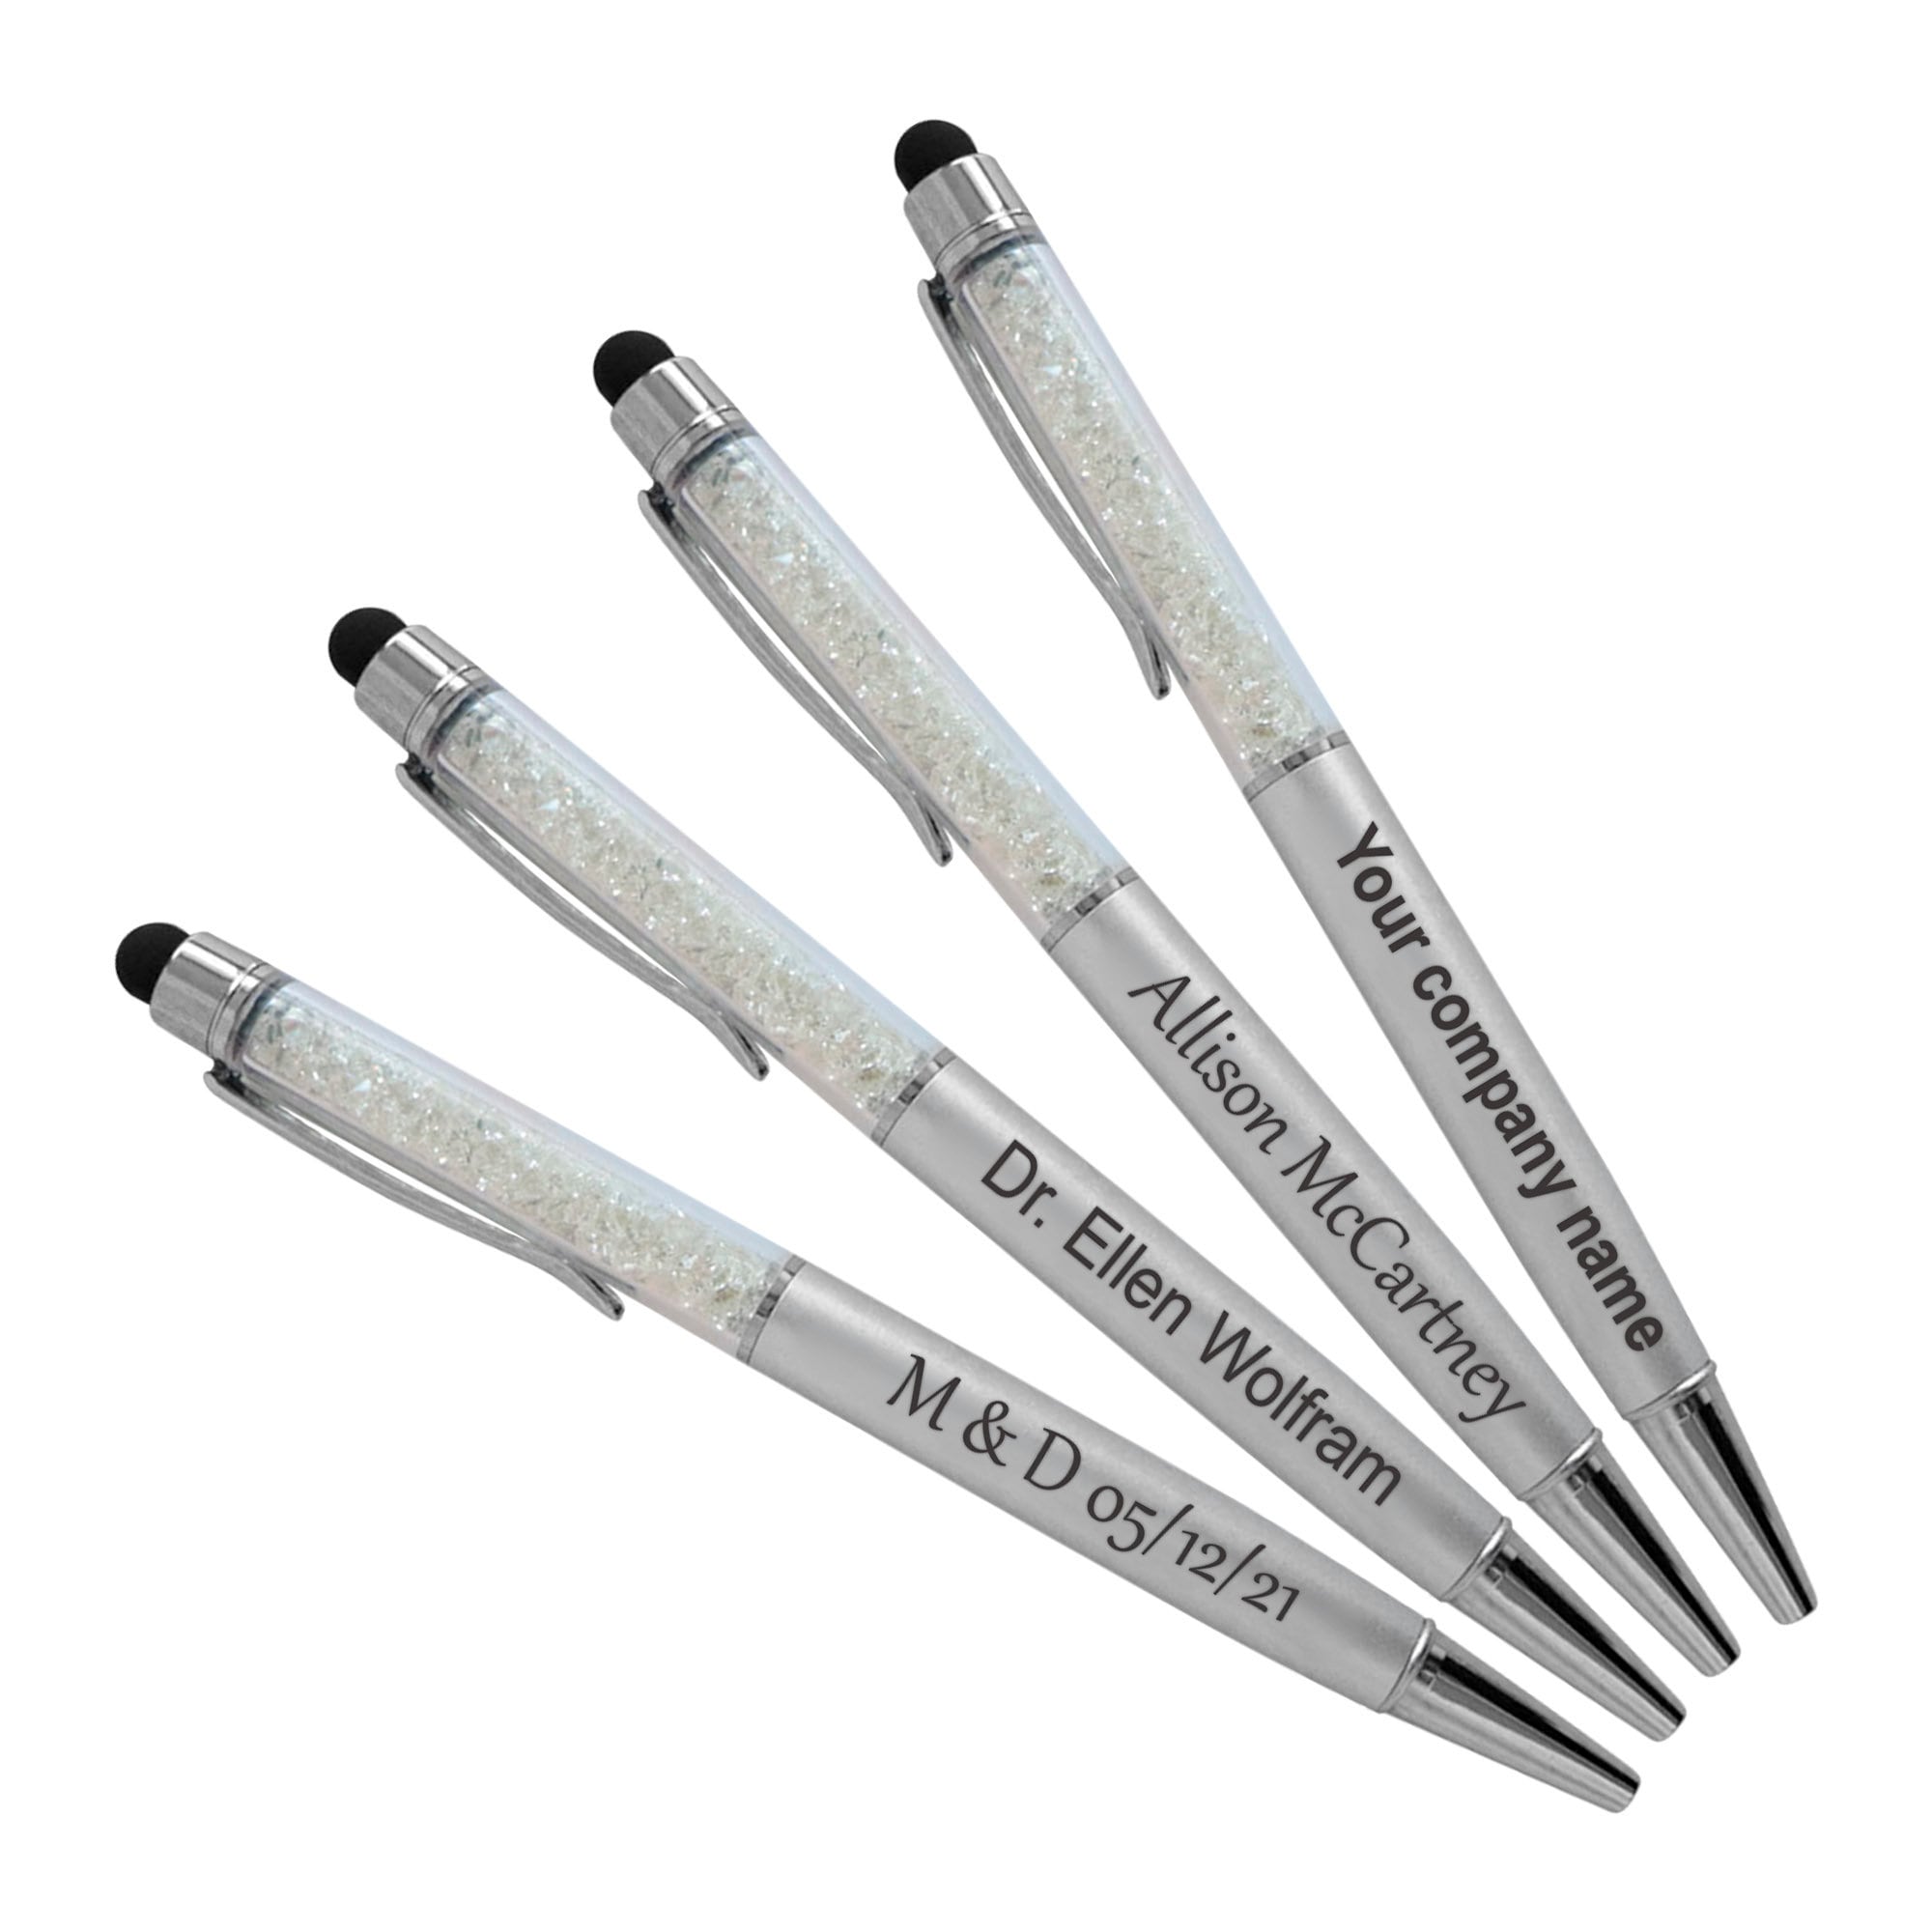 20pack Custom Personalized Pen, Diamond Pens Name pens Black Ink Pen  company pen